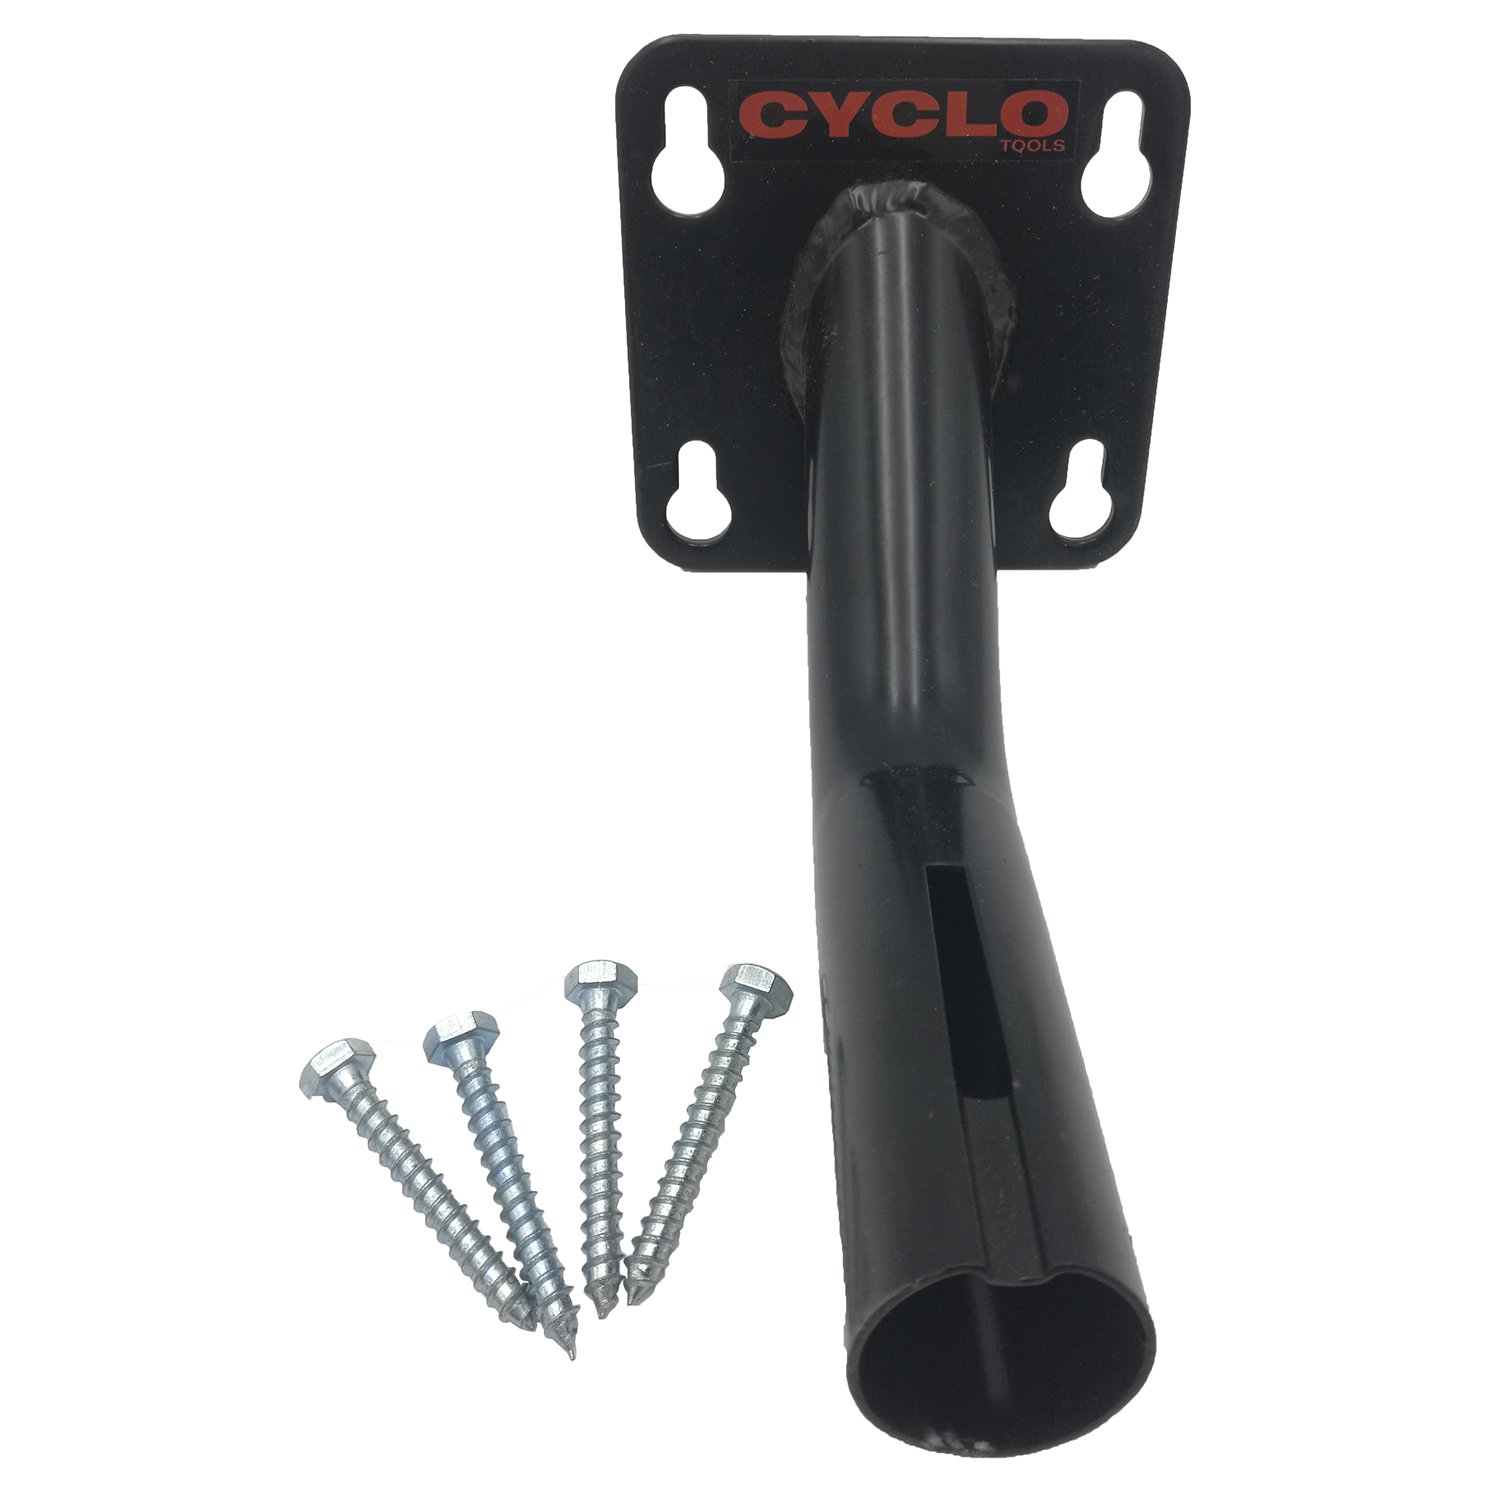 Стенд/крепление CYCLO для зажима 7-07740, к верстаку/столу, изогнутая труба, сталь, черное, 7-07745 крюк для зажима manfrotto 5039